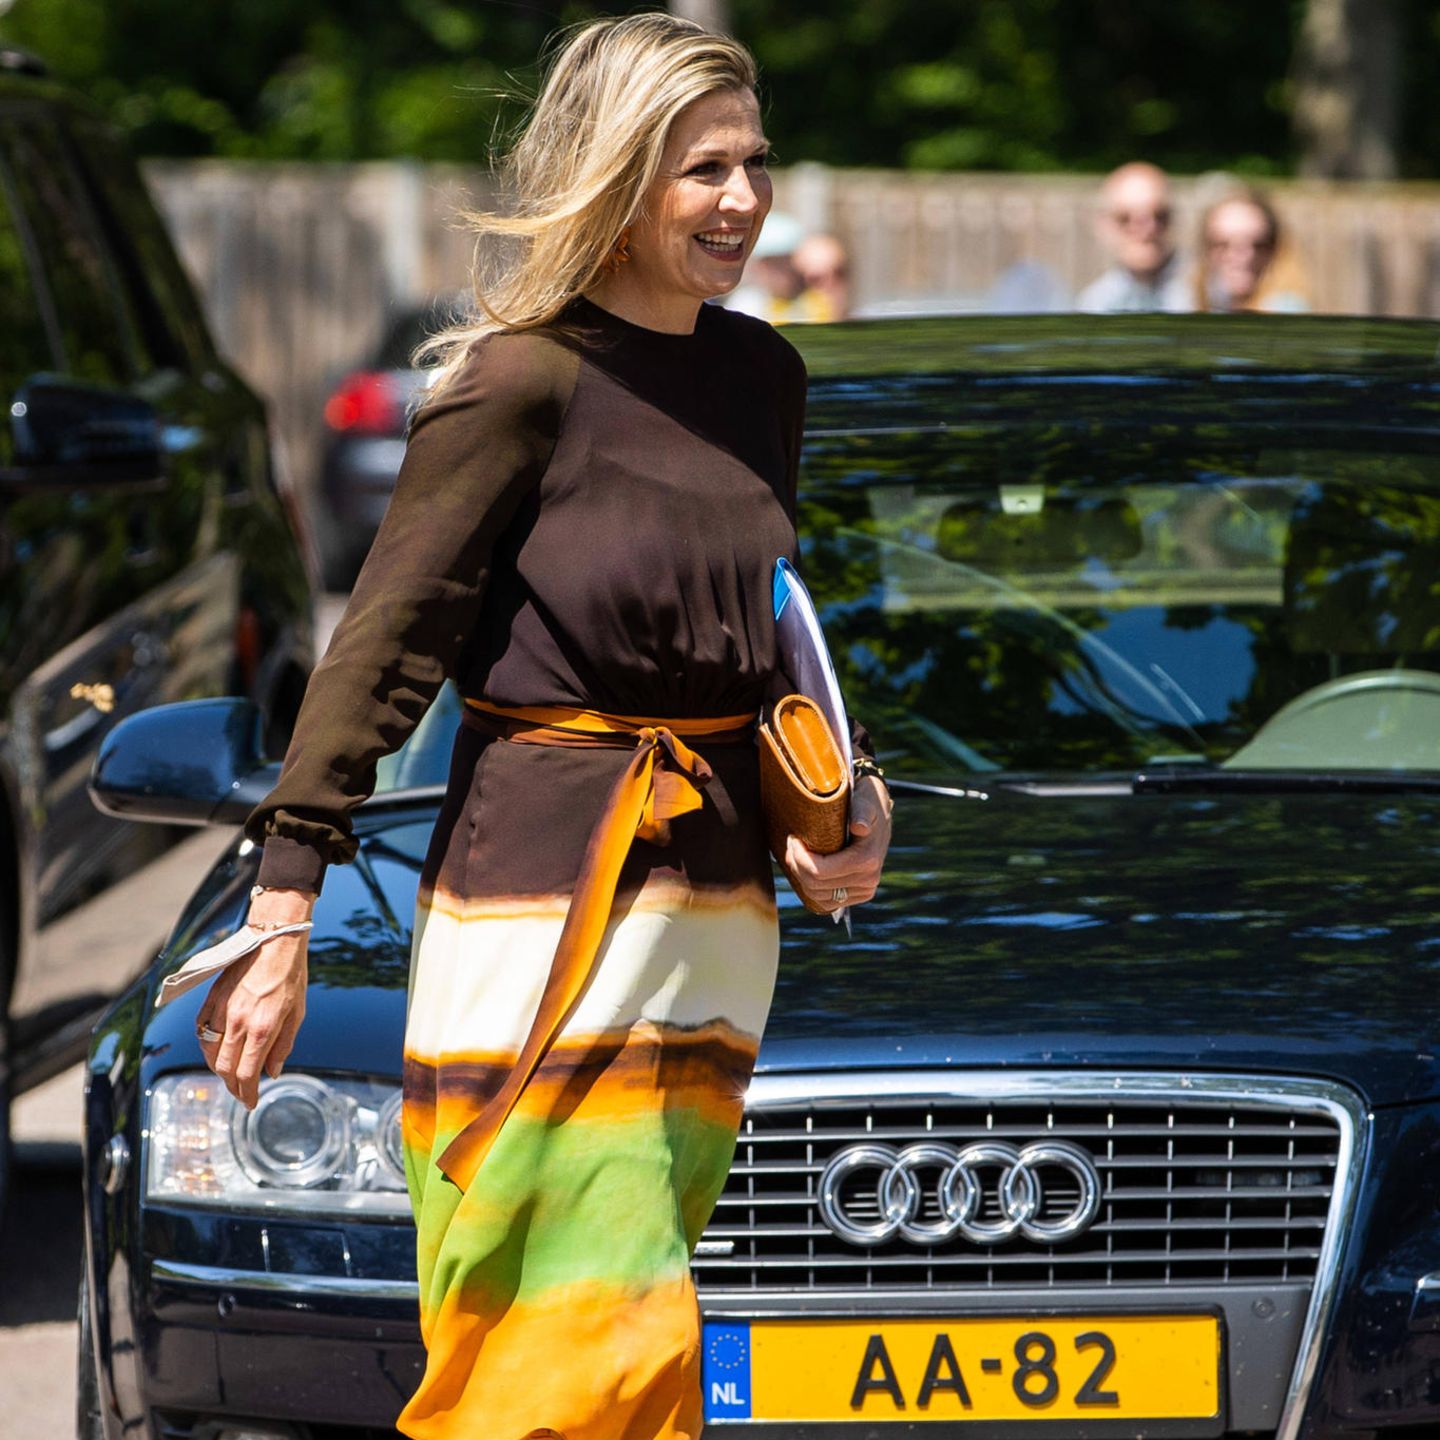 Luftiger Stoff, angemessene Länge und die Schultern bedeckt – Königin Máxima ist perfekt gekleidet für ihren offiziellen Besuch in Zwolle. Das Kleid des niederländischen Modedesigners Jan Taminiau gehört zu Máximas Lieblingskleidern. Das letzte Mal trug sie es auf einer besonderen Reise.